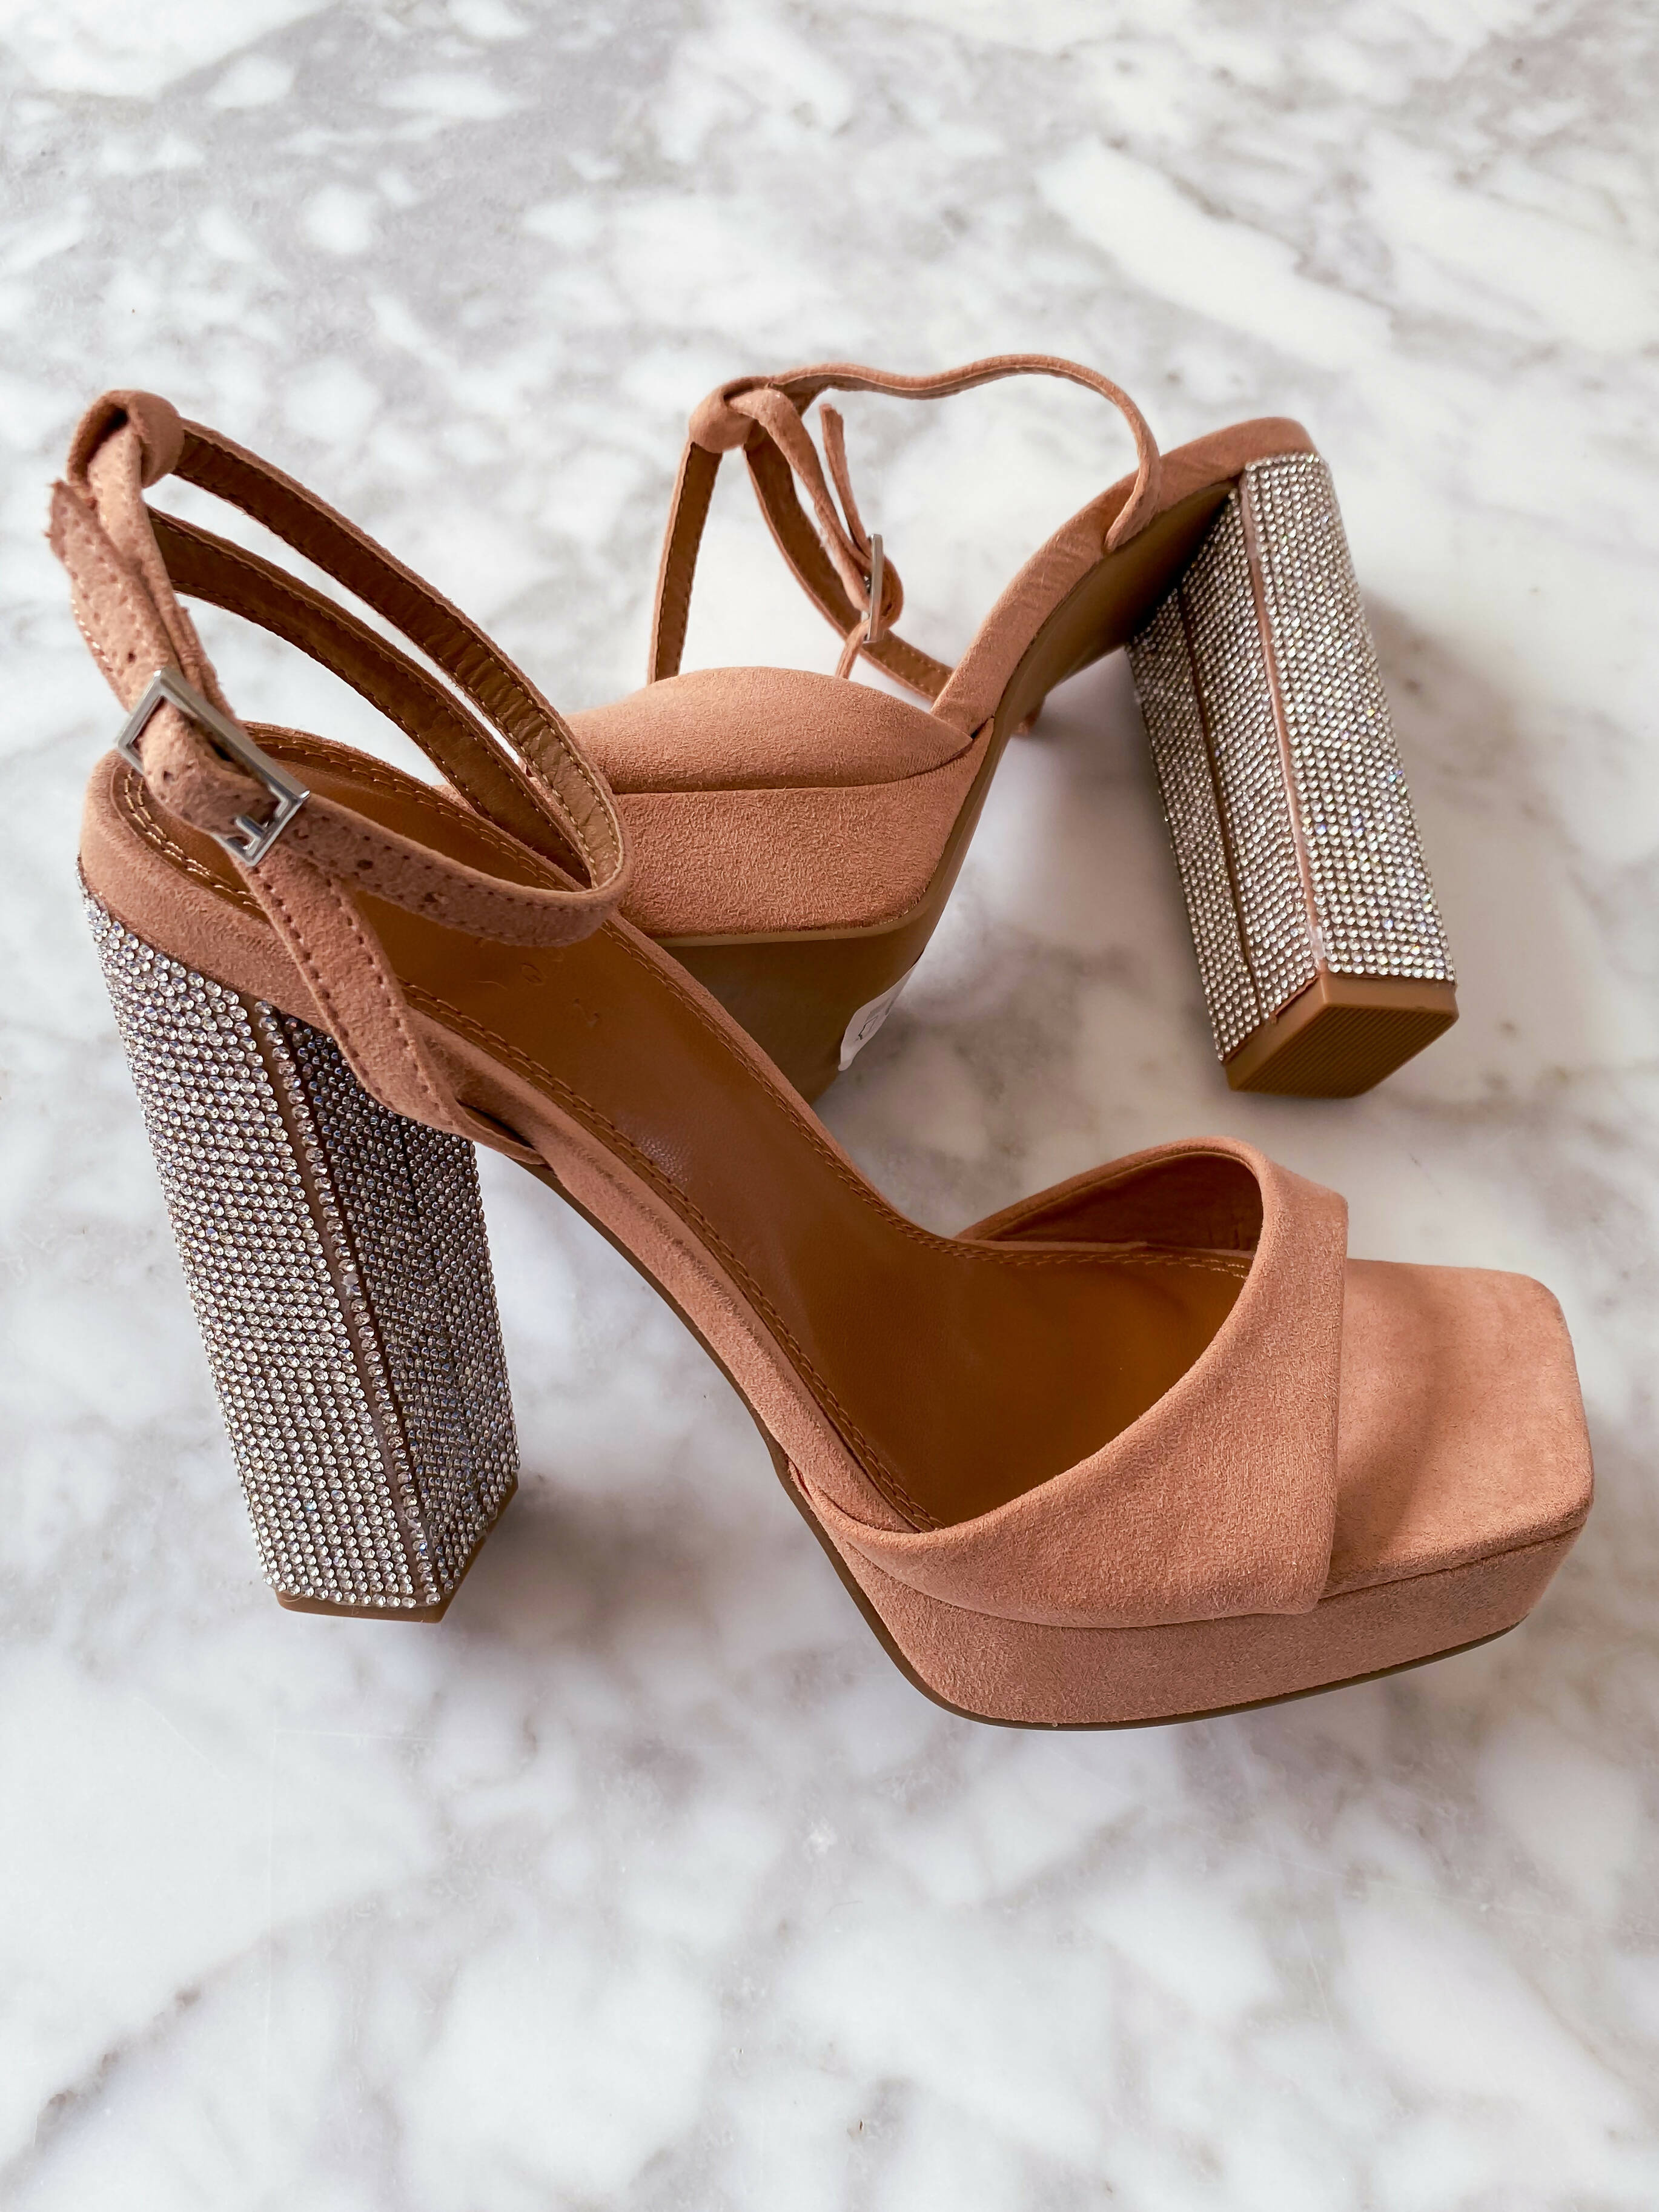 ASOS DESIGN Poppy embellished slingback high heeled shoes in lime | ASOS